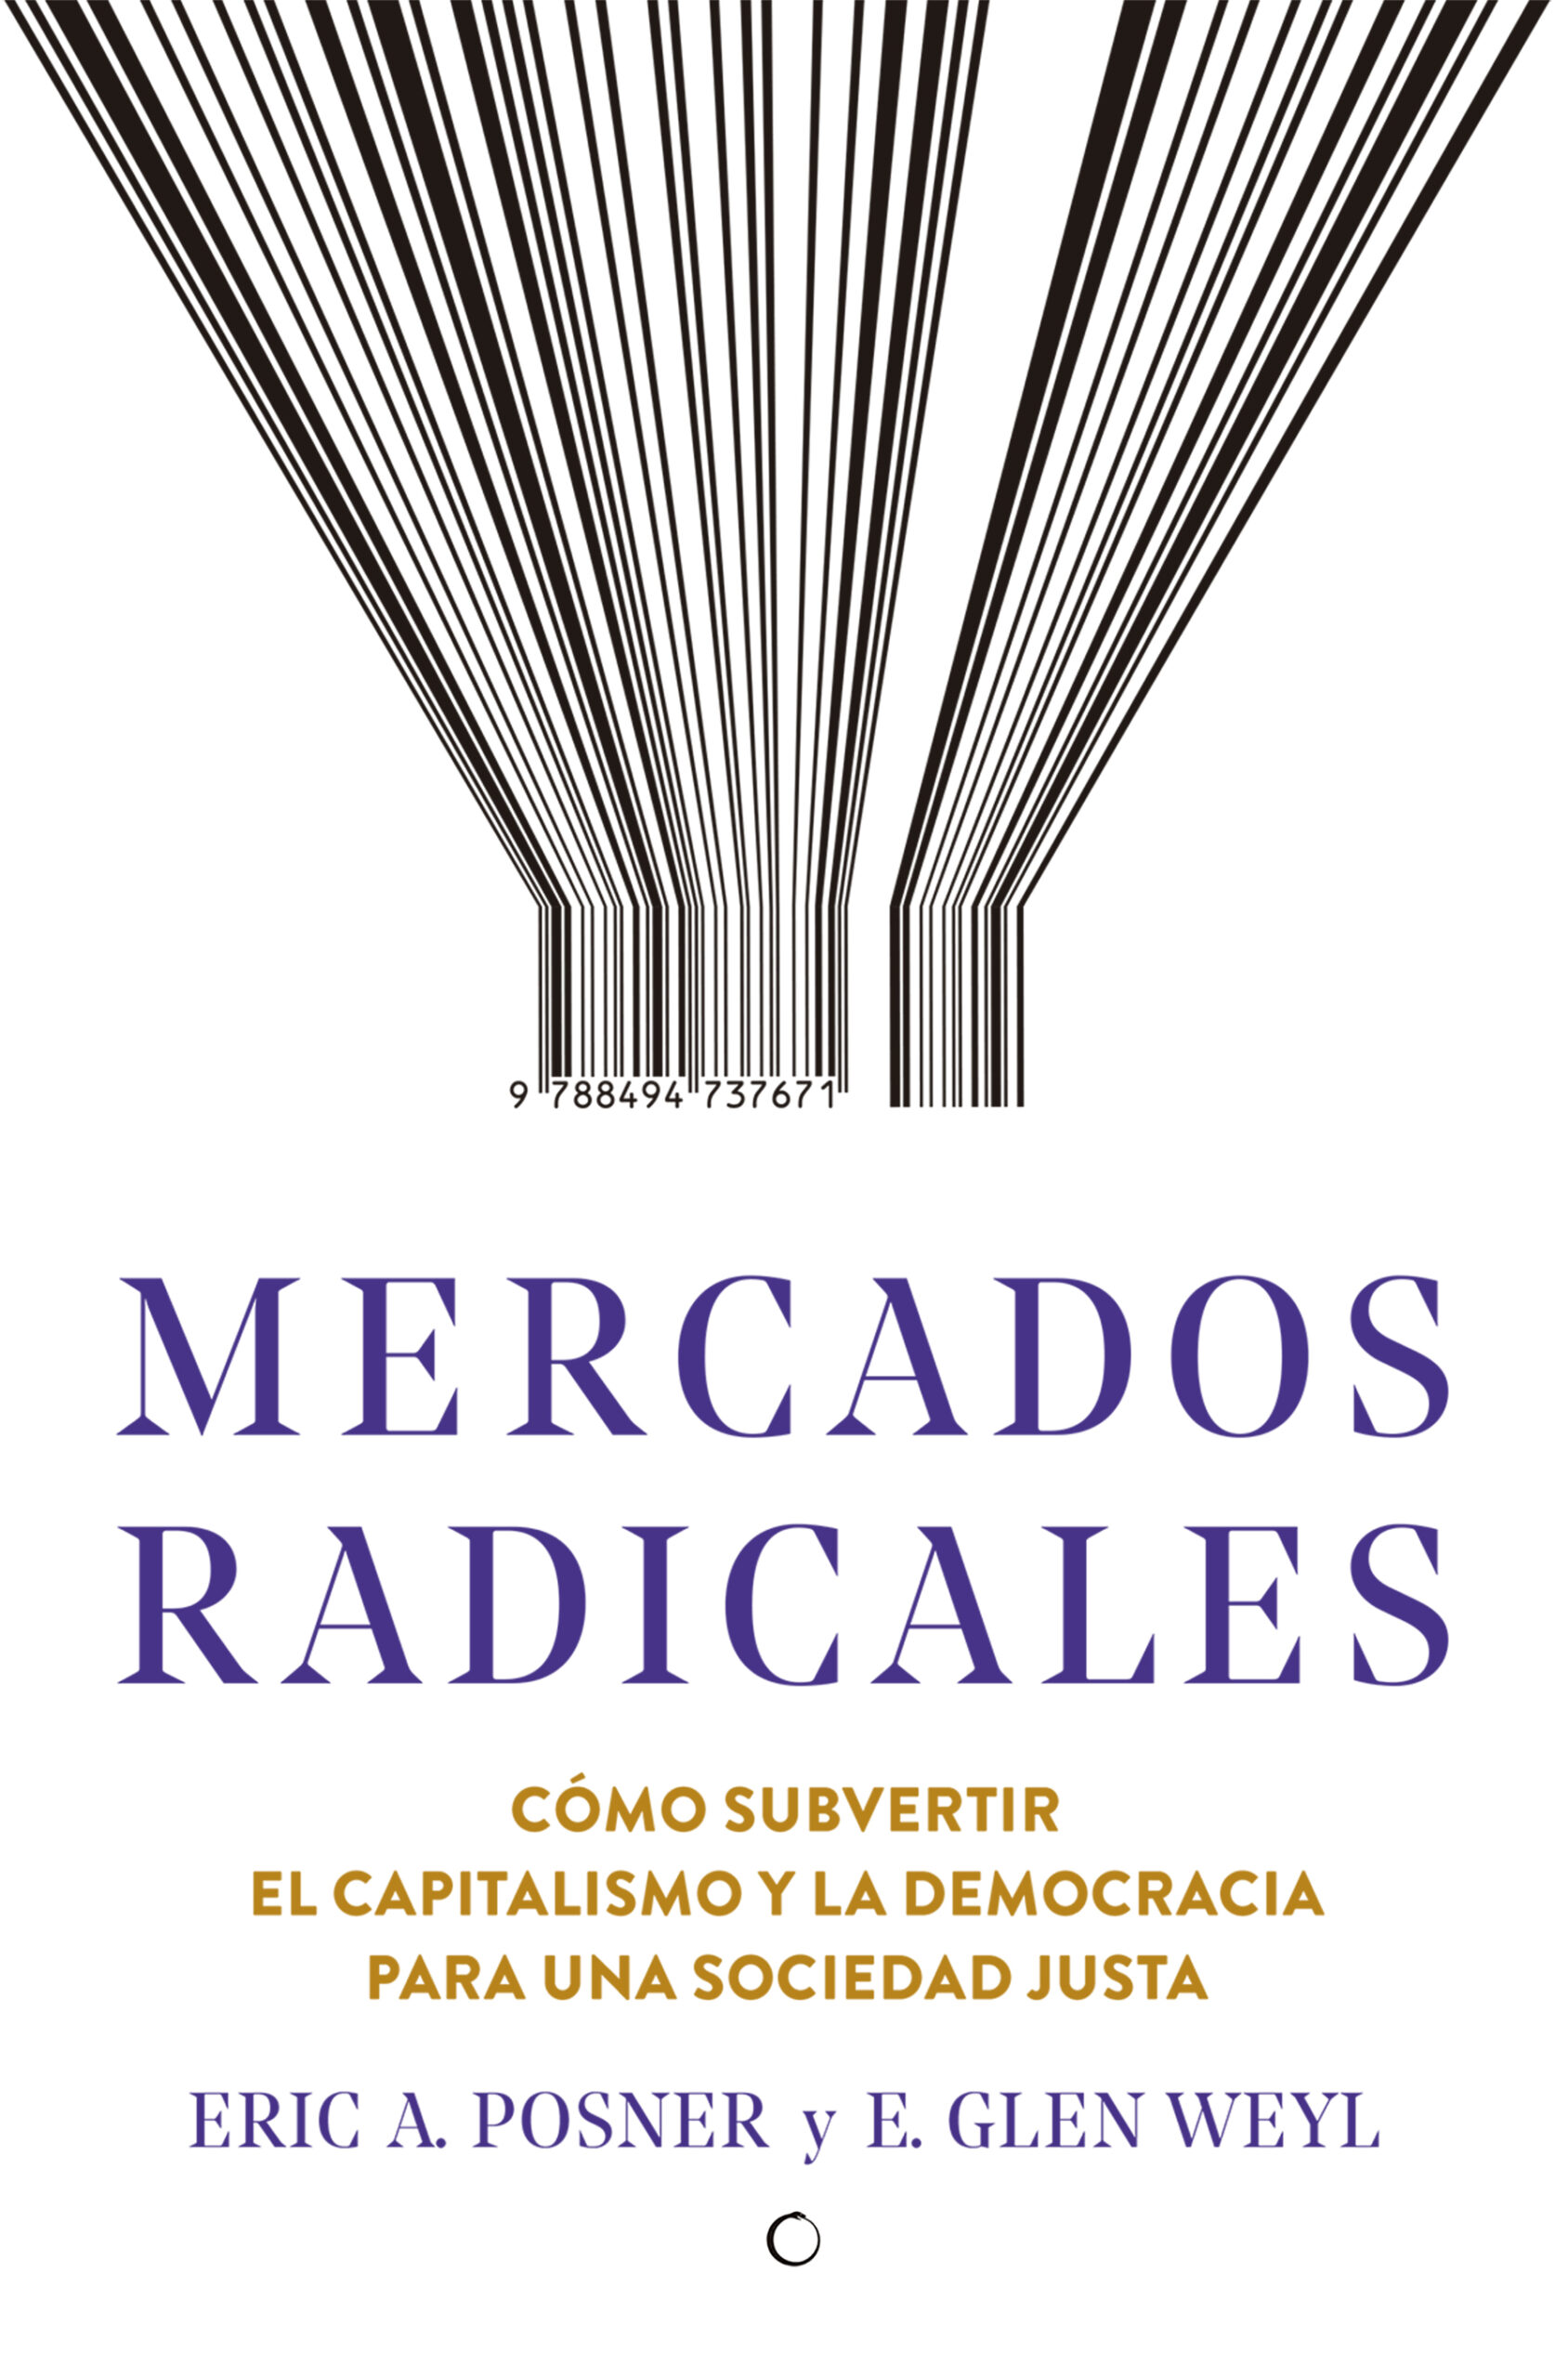 Mercados radicales Cómo subvertir el capitalismo y la democracia -9788494737671